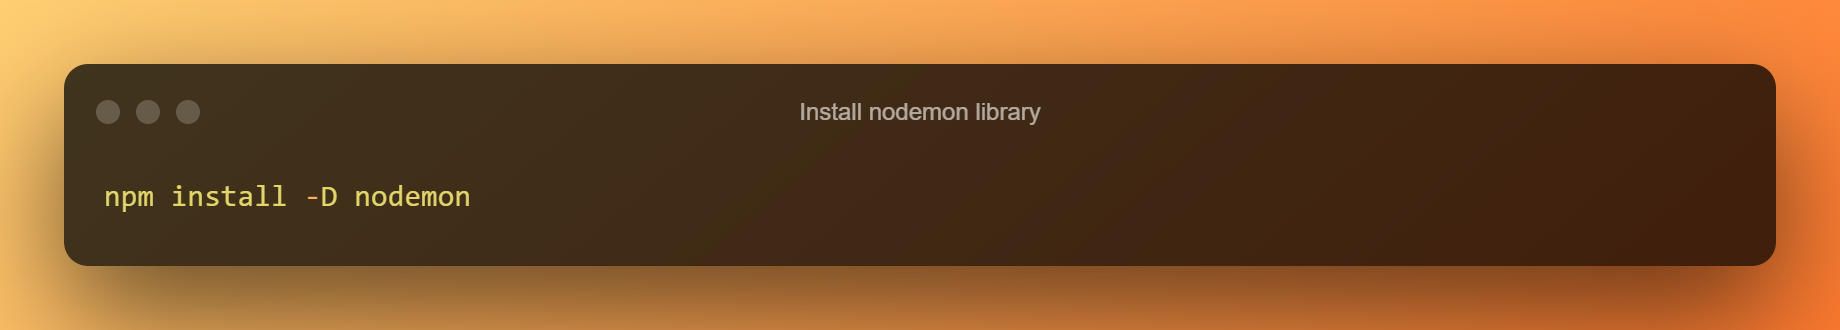 Install Nodemon Library